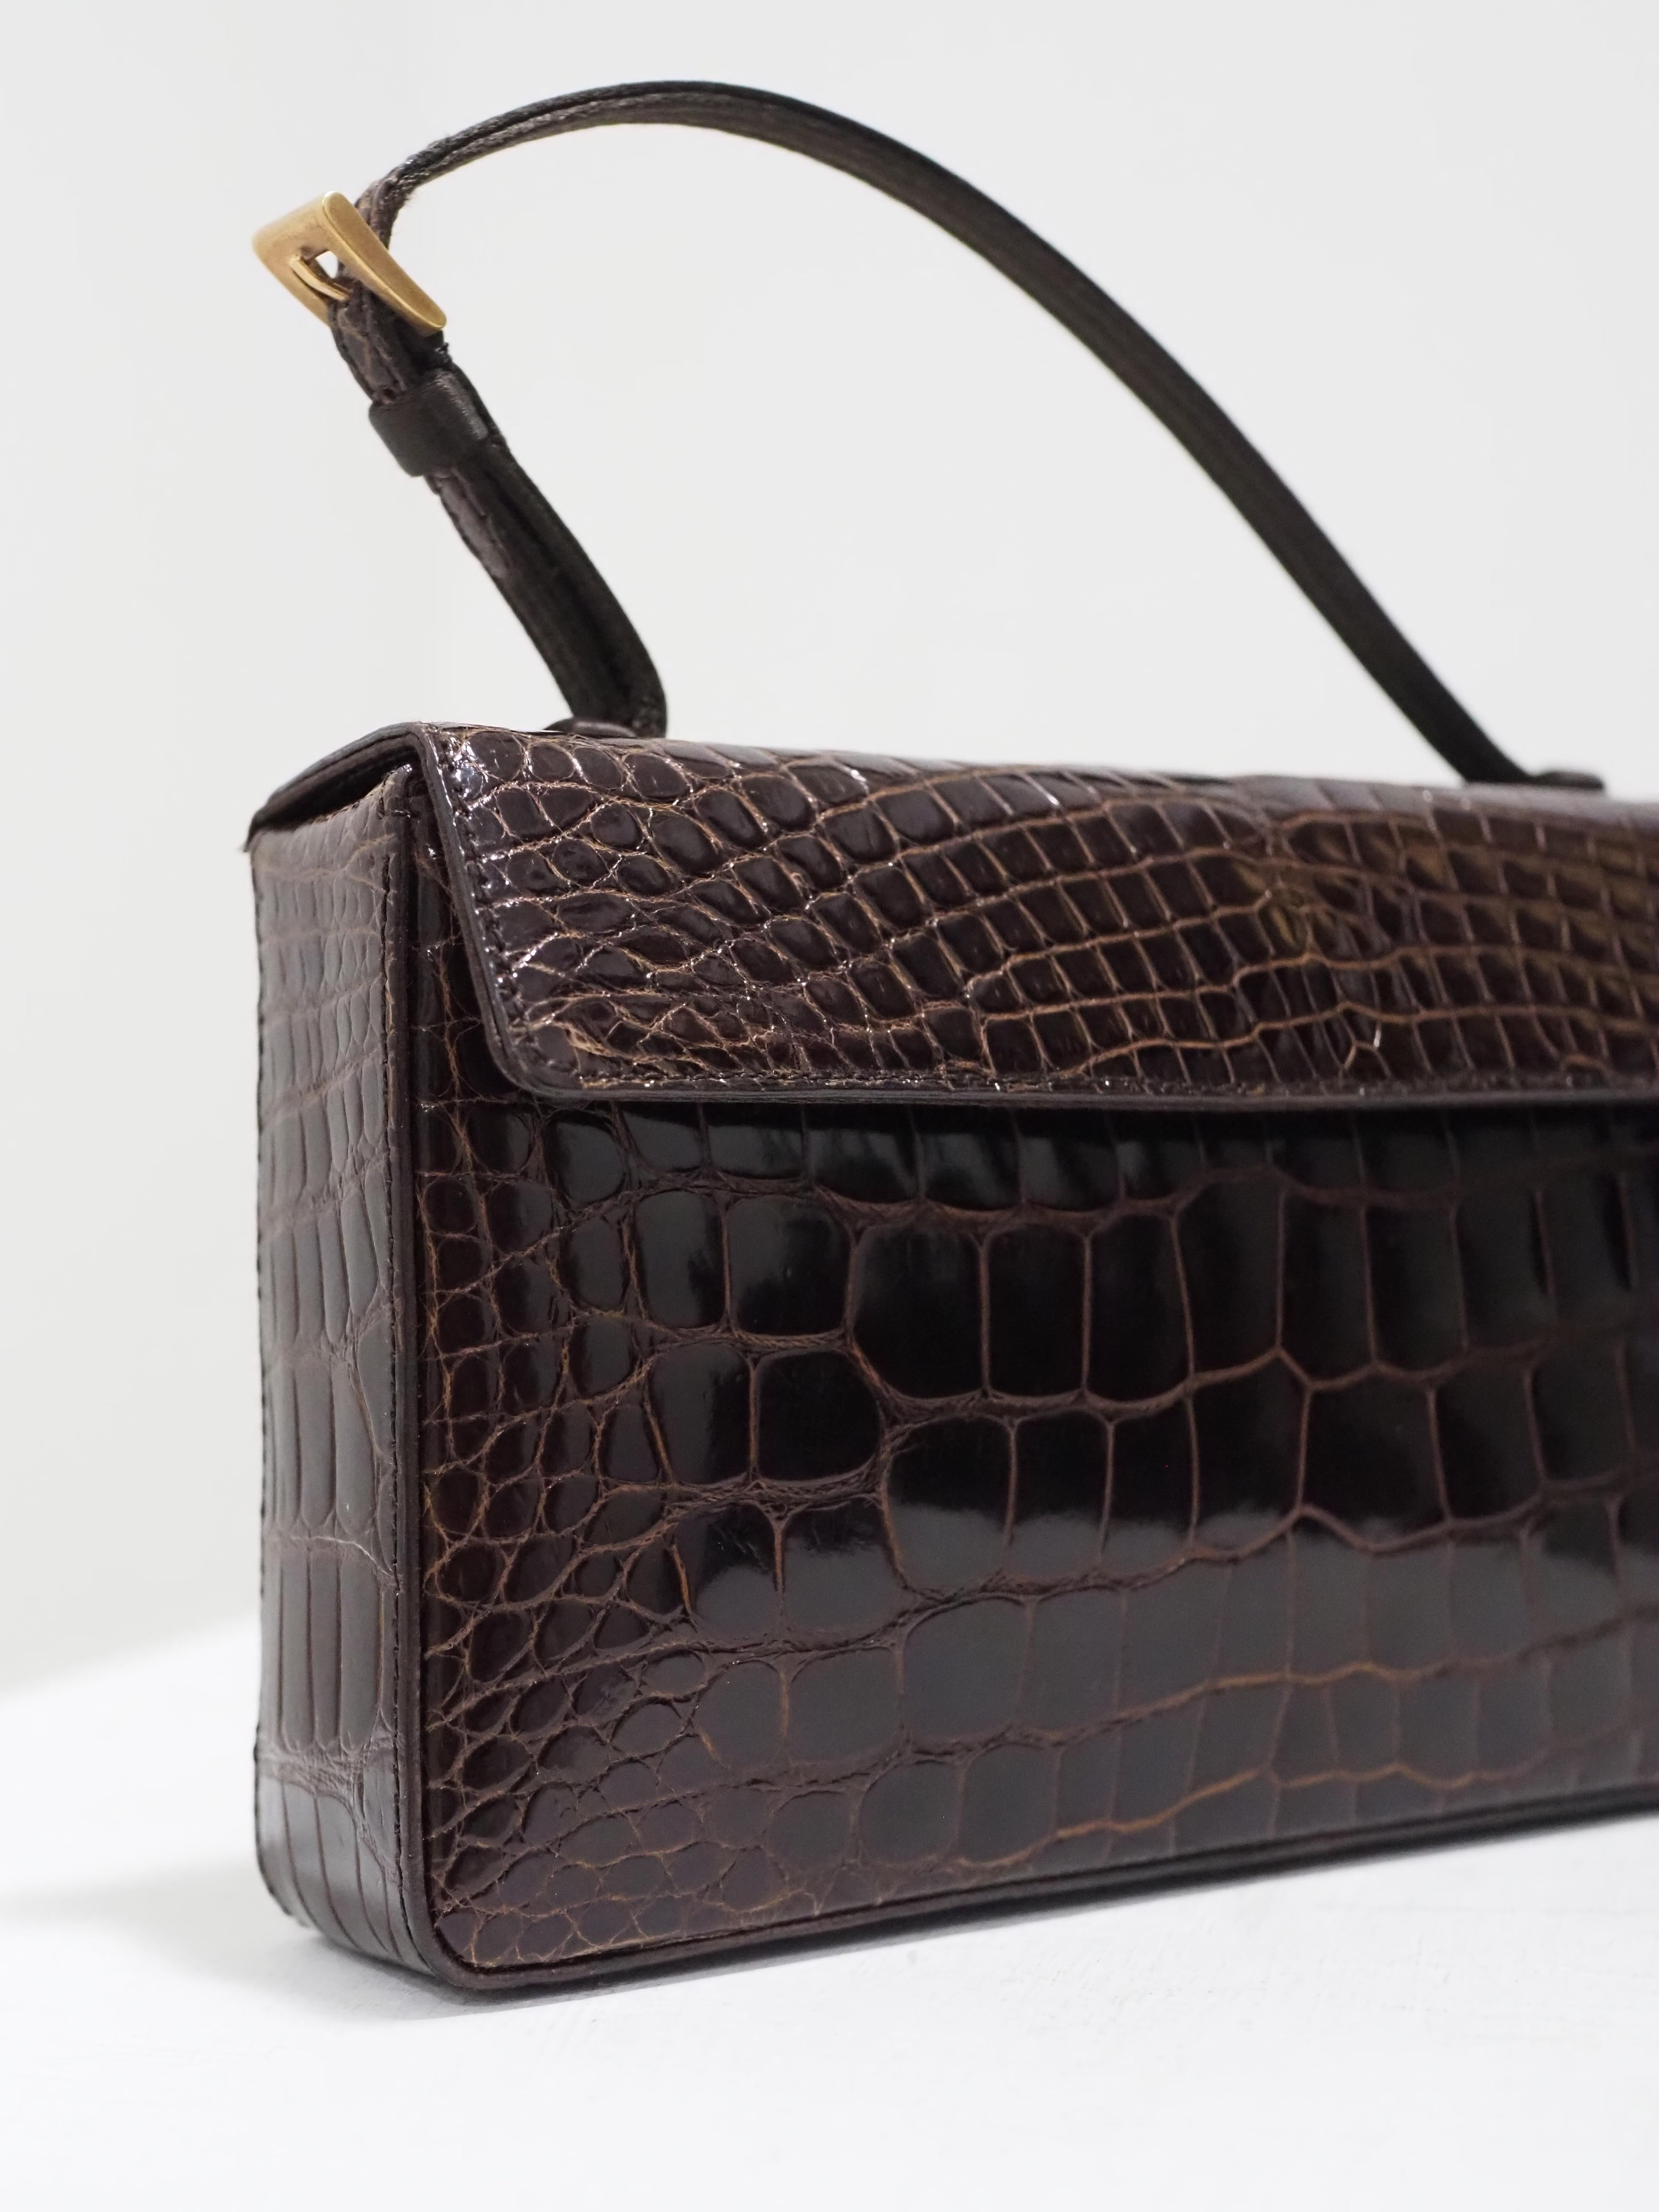 Prada brown croco leather small handbag 5